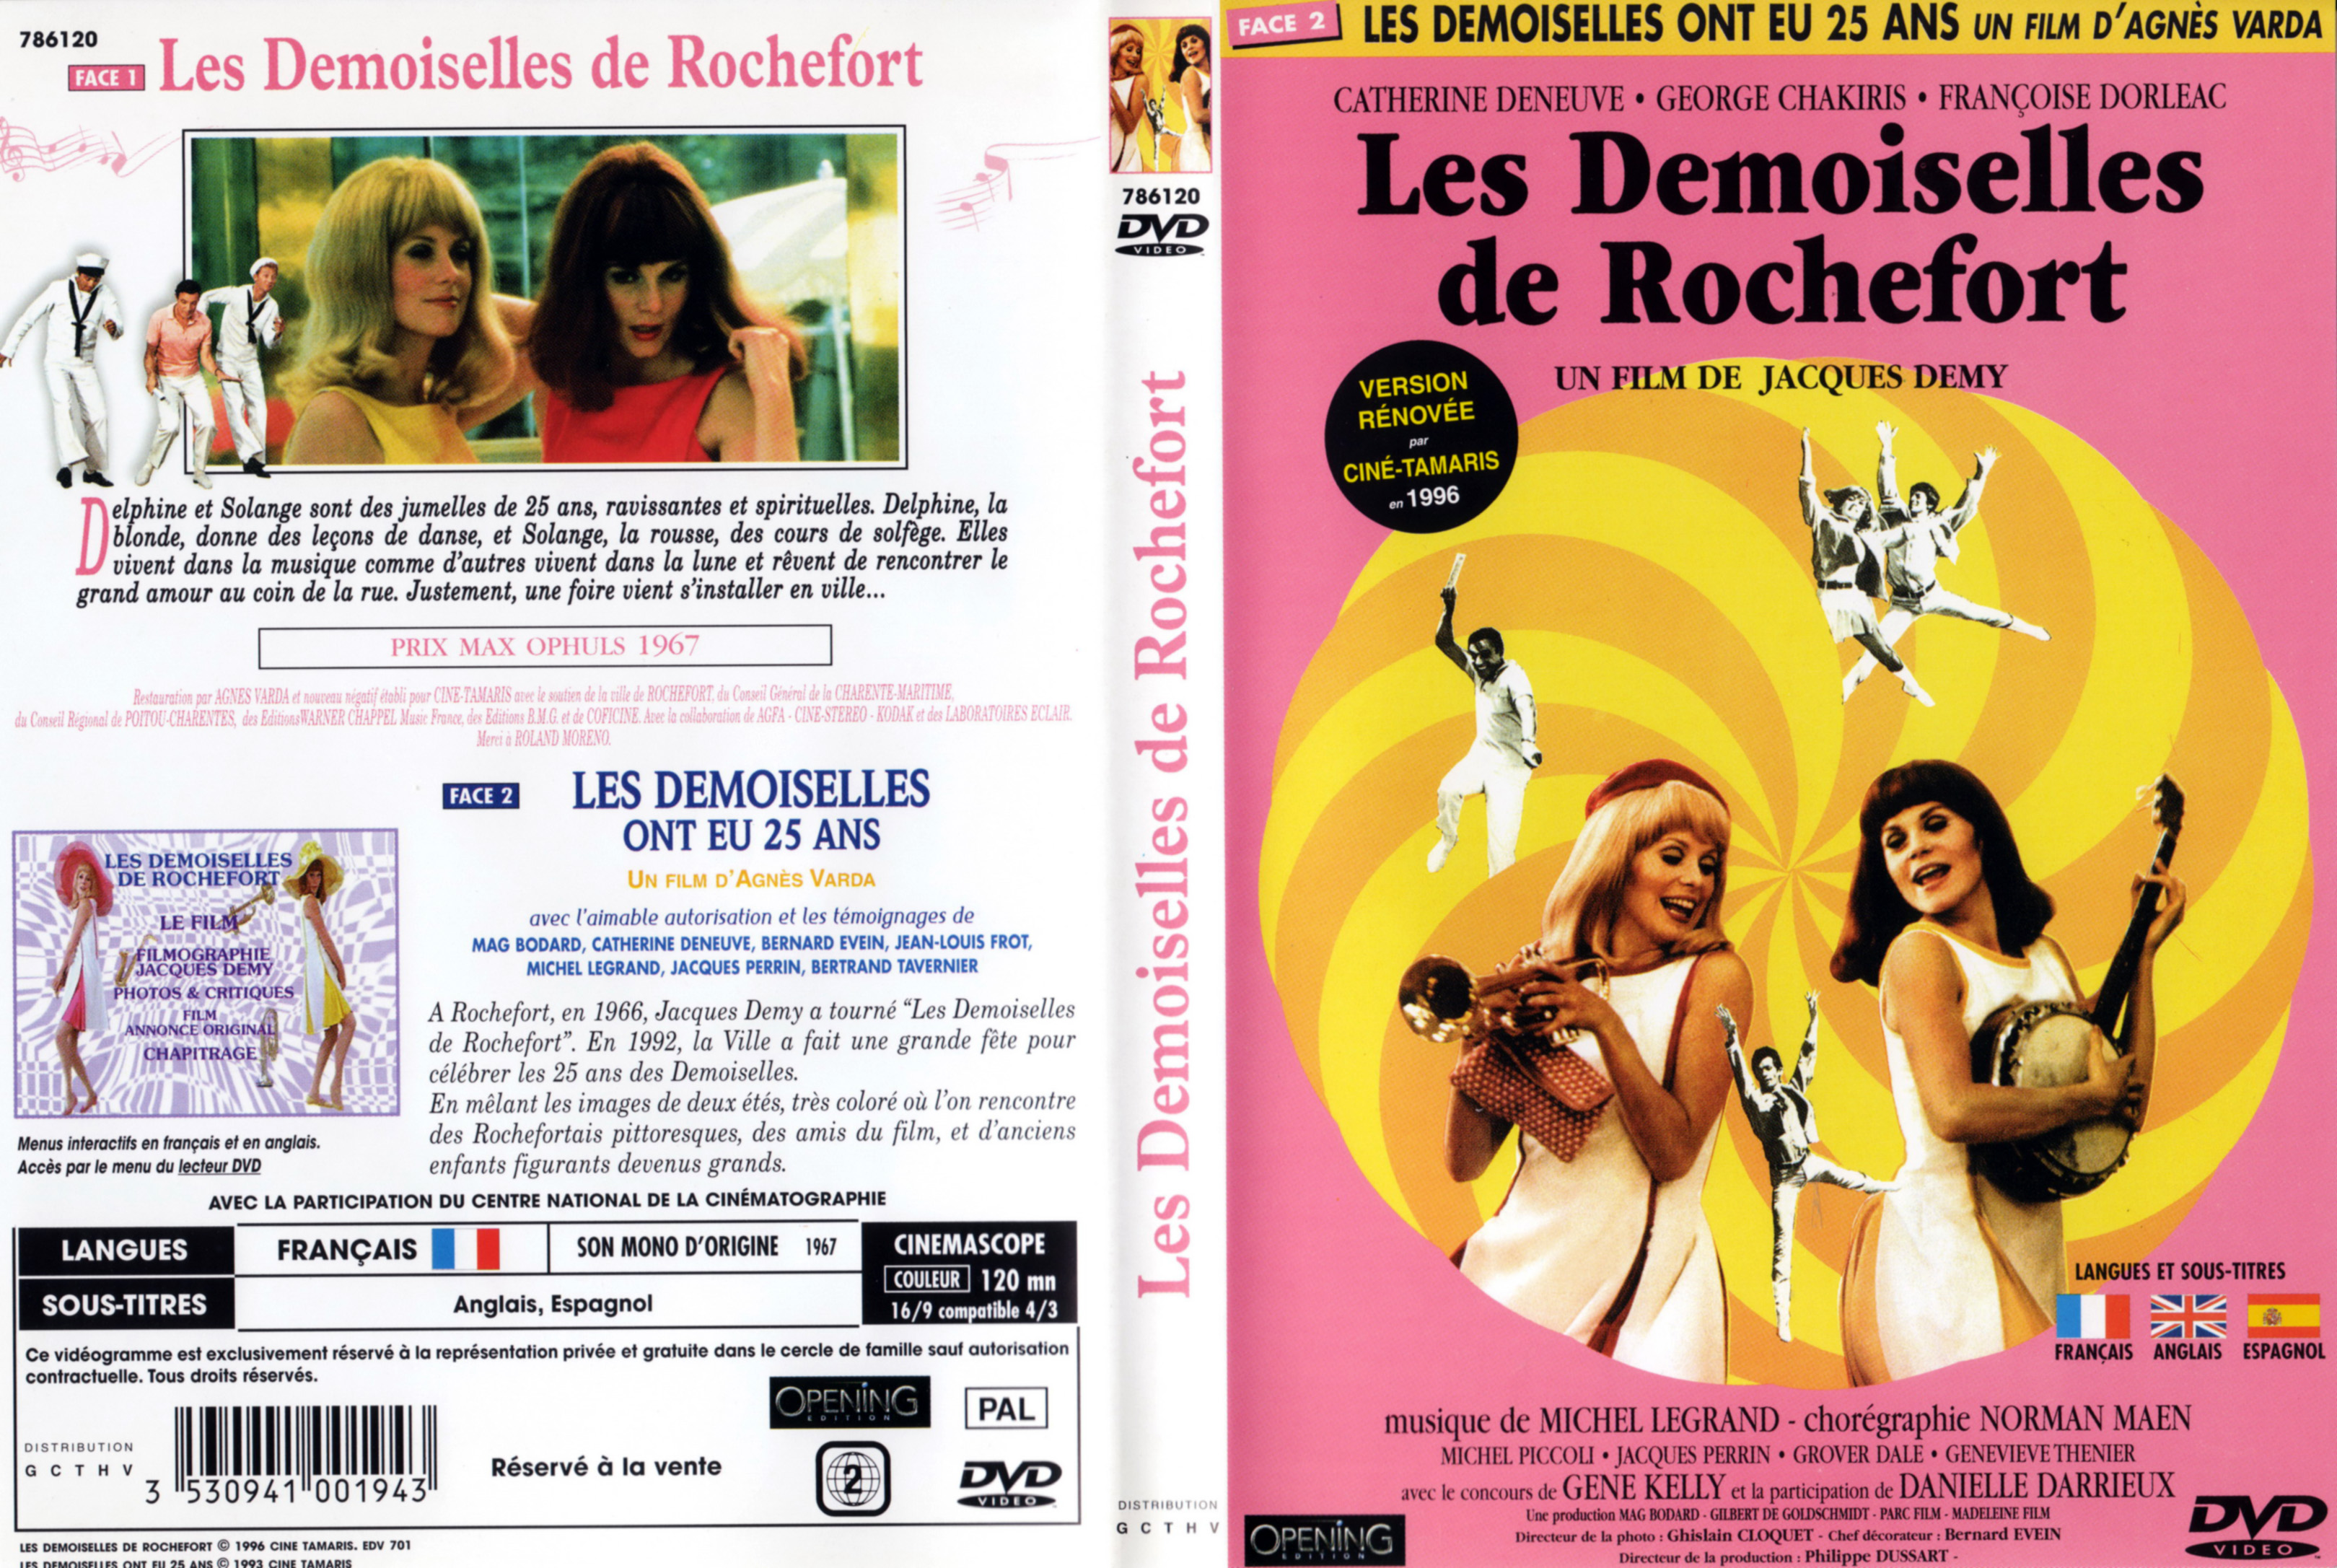 Jaquette DVD Les demoiselles de Rochefort v2